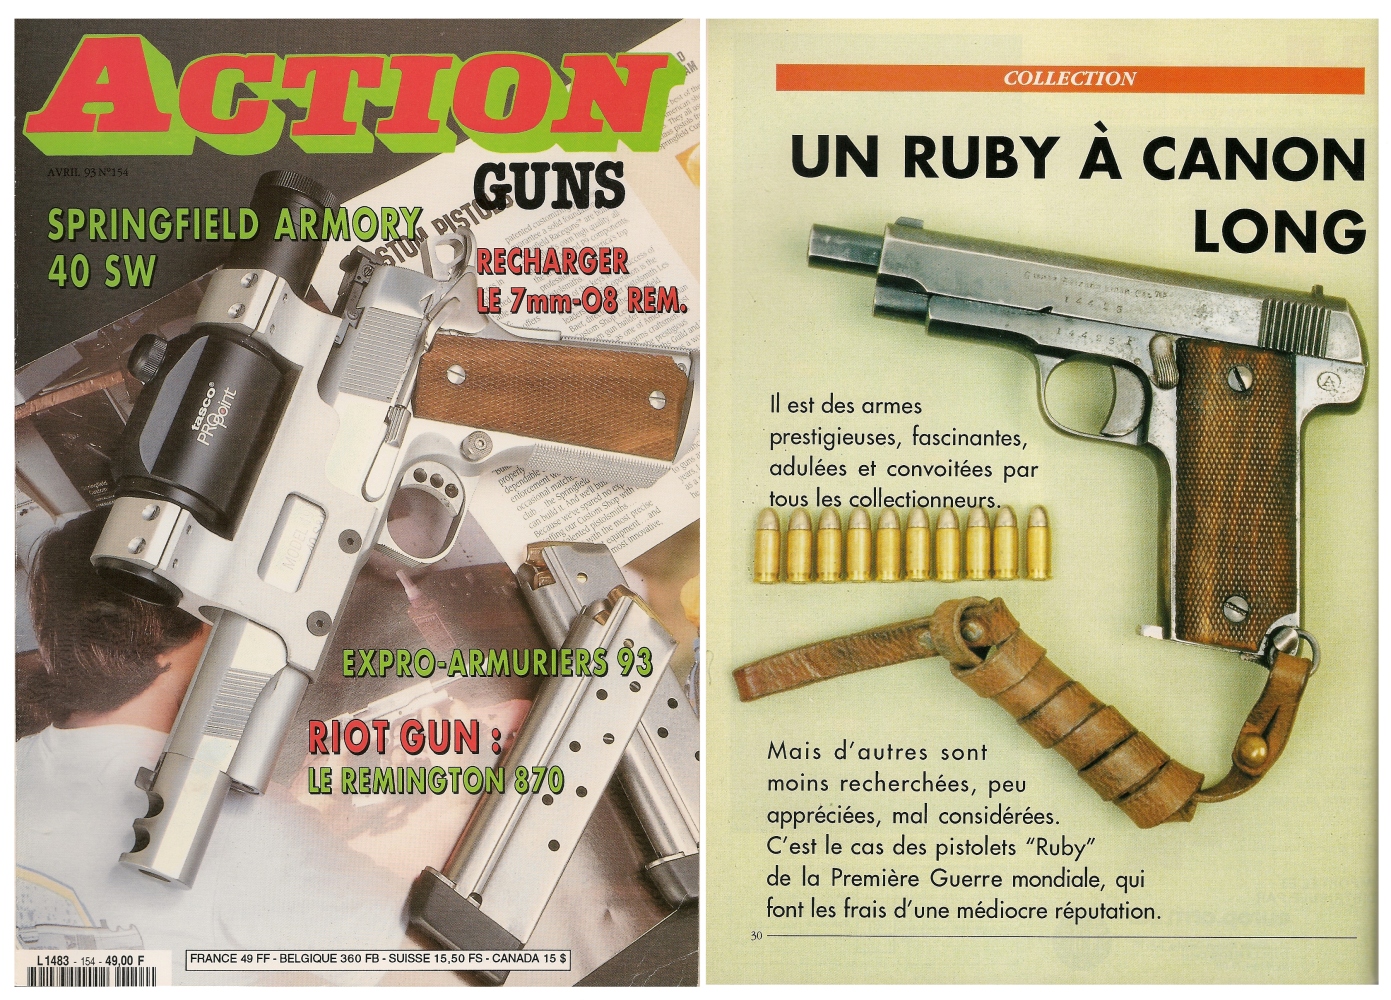 Le banc d’essai du pistolet Arizage type « Ruby 14-18 » a été publié sur 5 pages dans le magazine Action Guns n°154 (avril 1993)